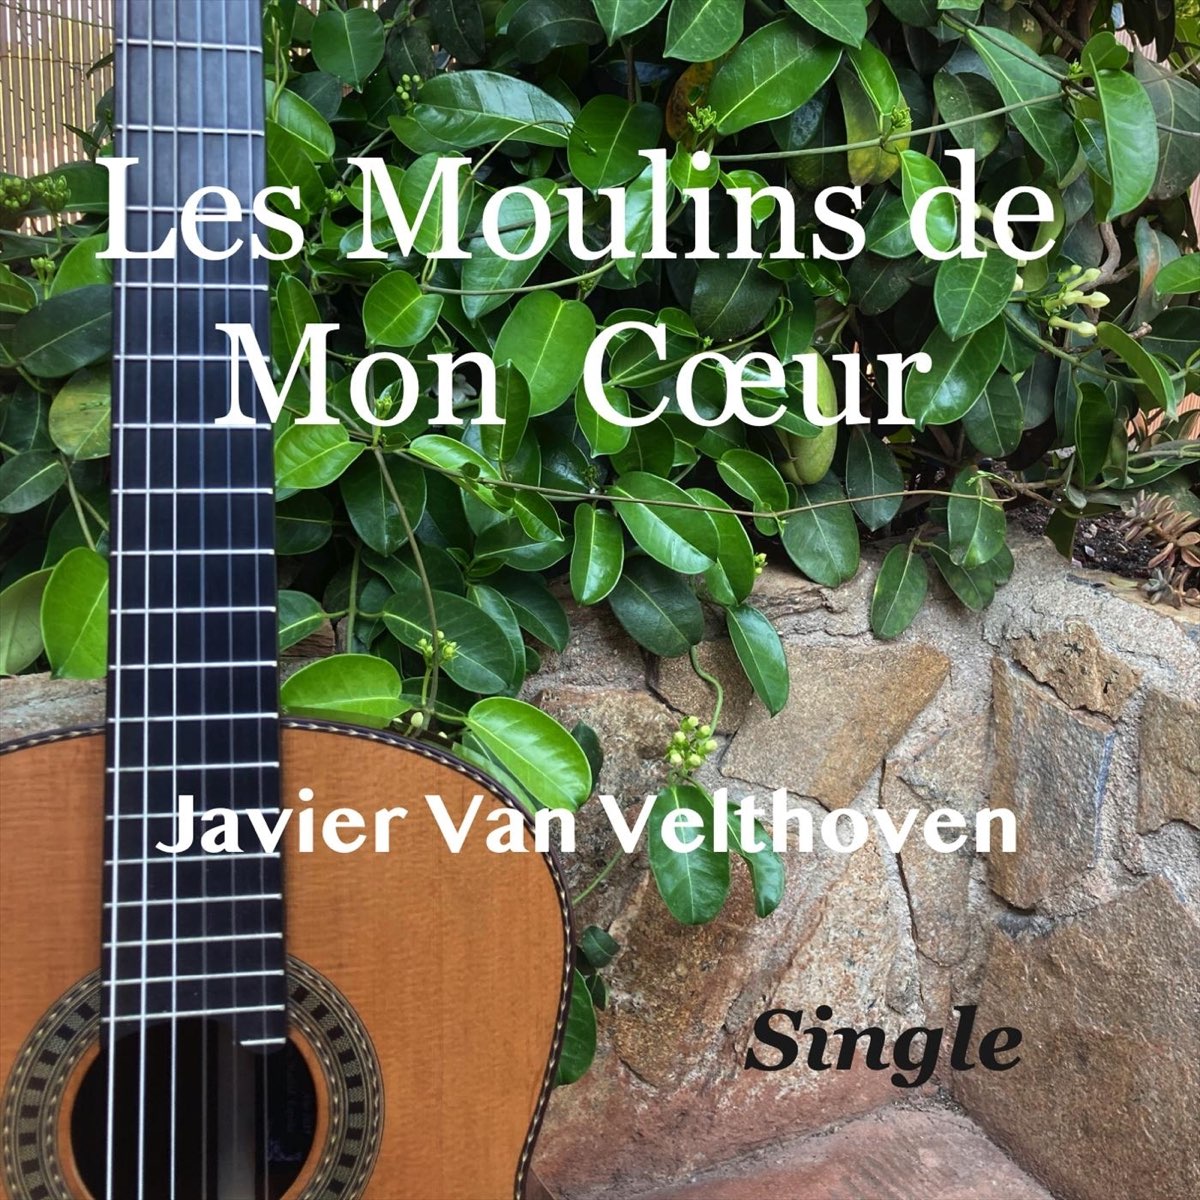 Les moulins de mon cœur - Single“ von Javier Van Velthoven bei Apple Music